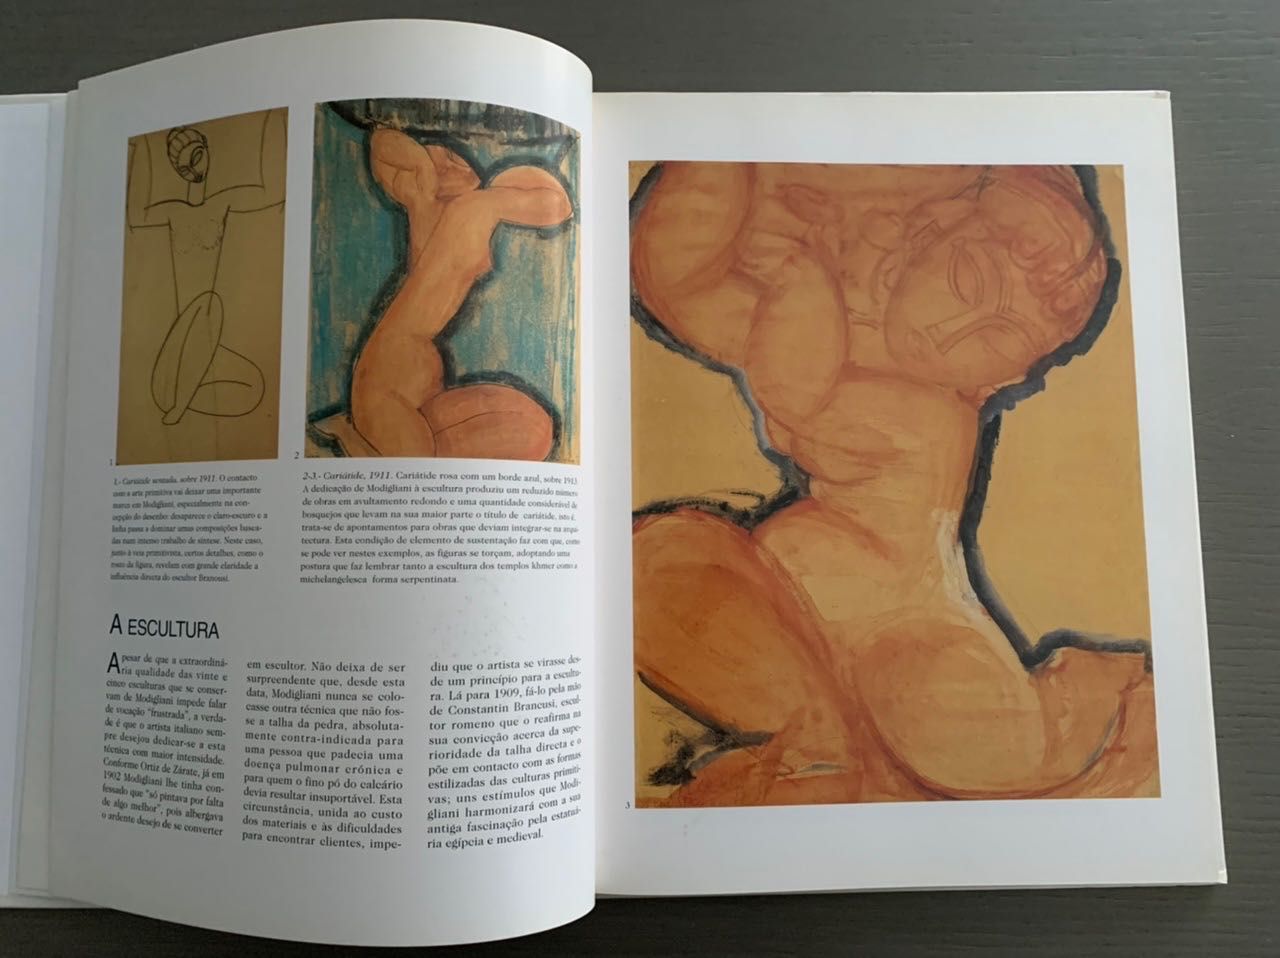 Grandes pintores do século XX - Modigliani